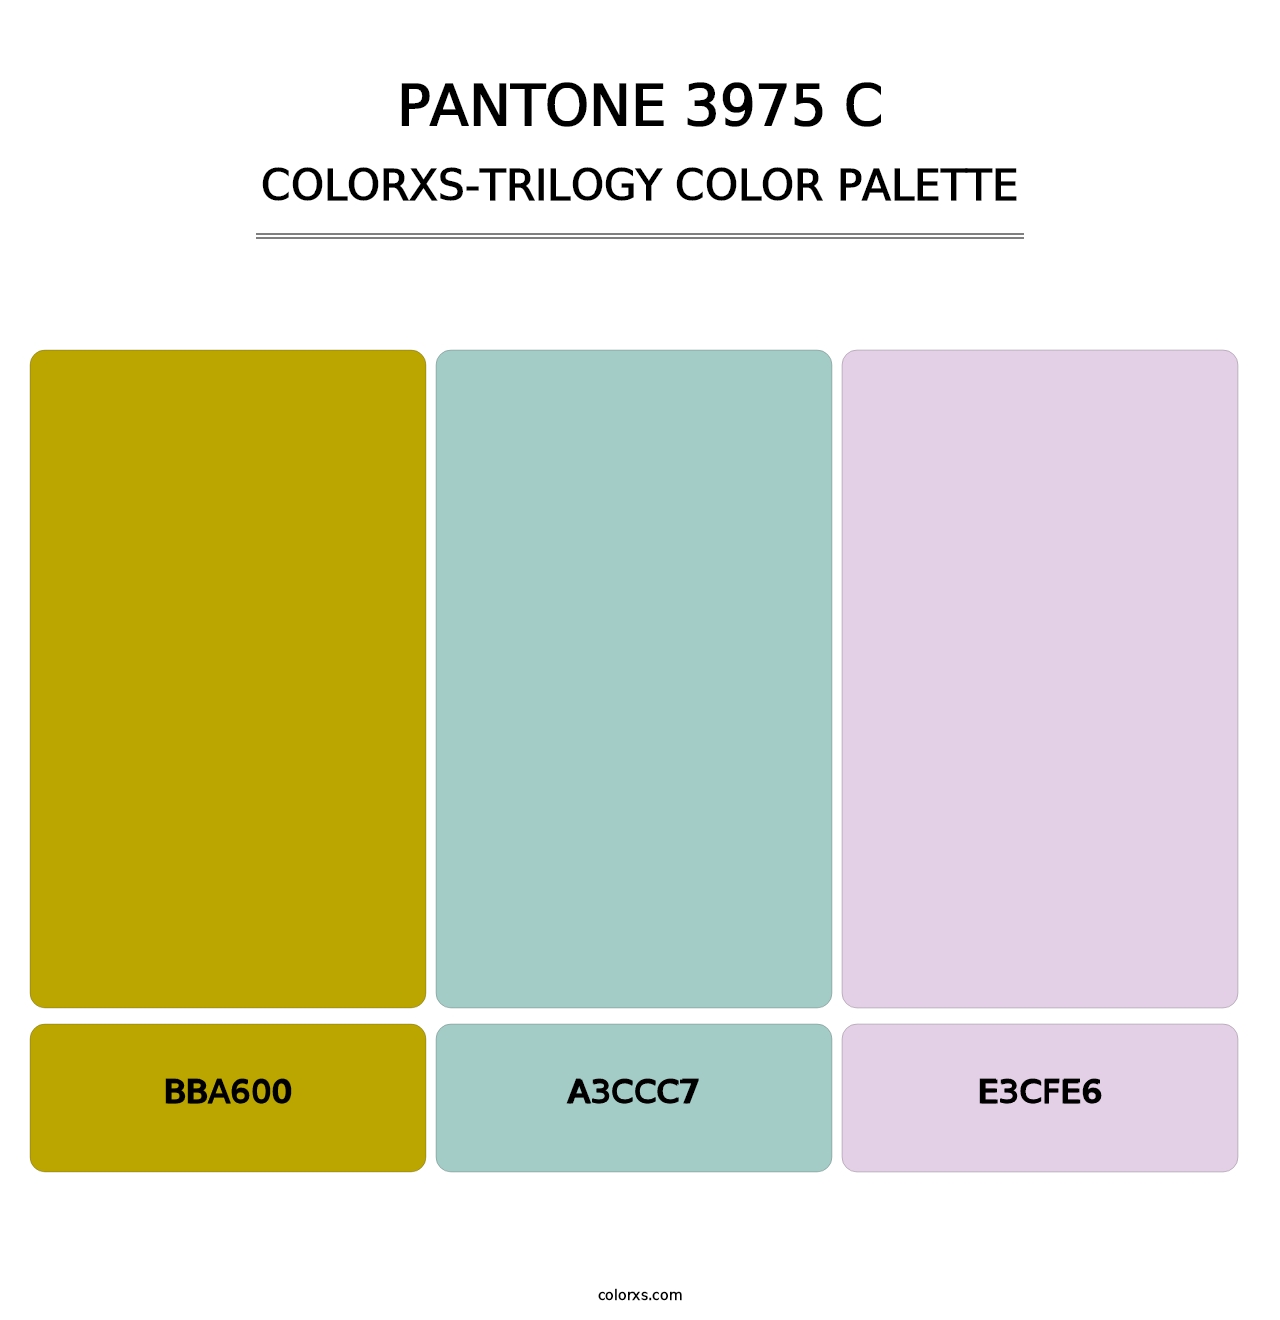 PANTONE 3975 C - Colorxs Trilogy Palette